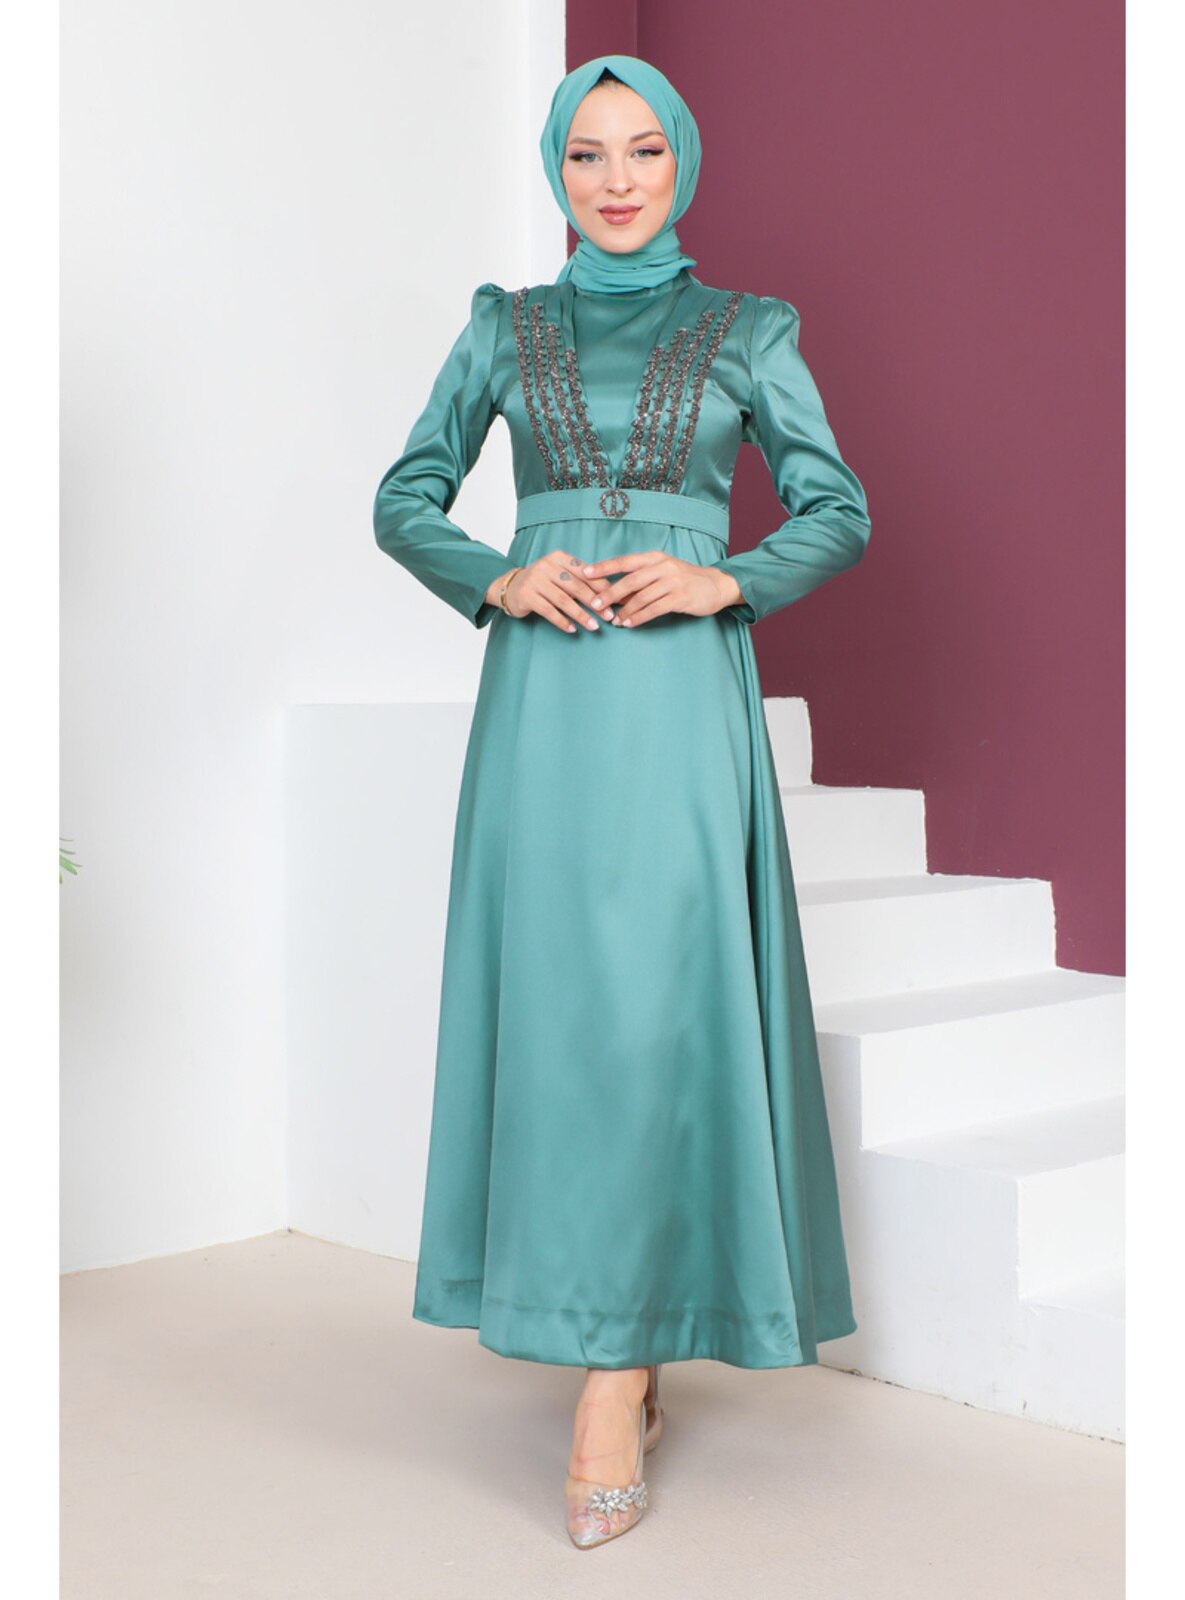 Mint Green - Unlined - Crew neck - Modest Evening Dress